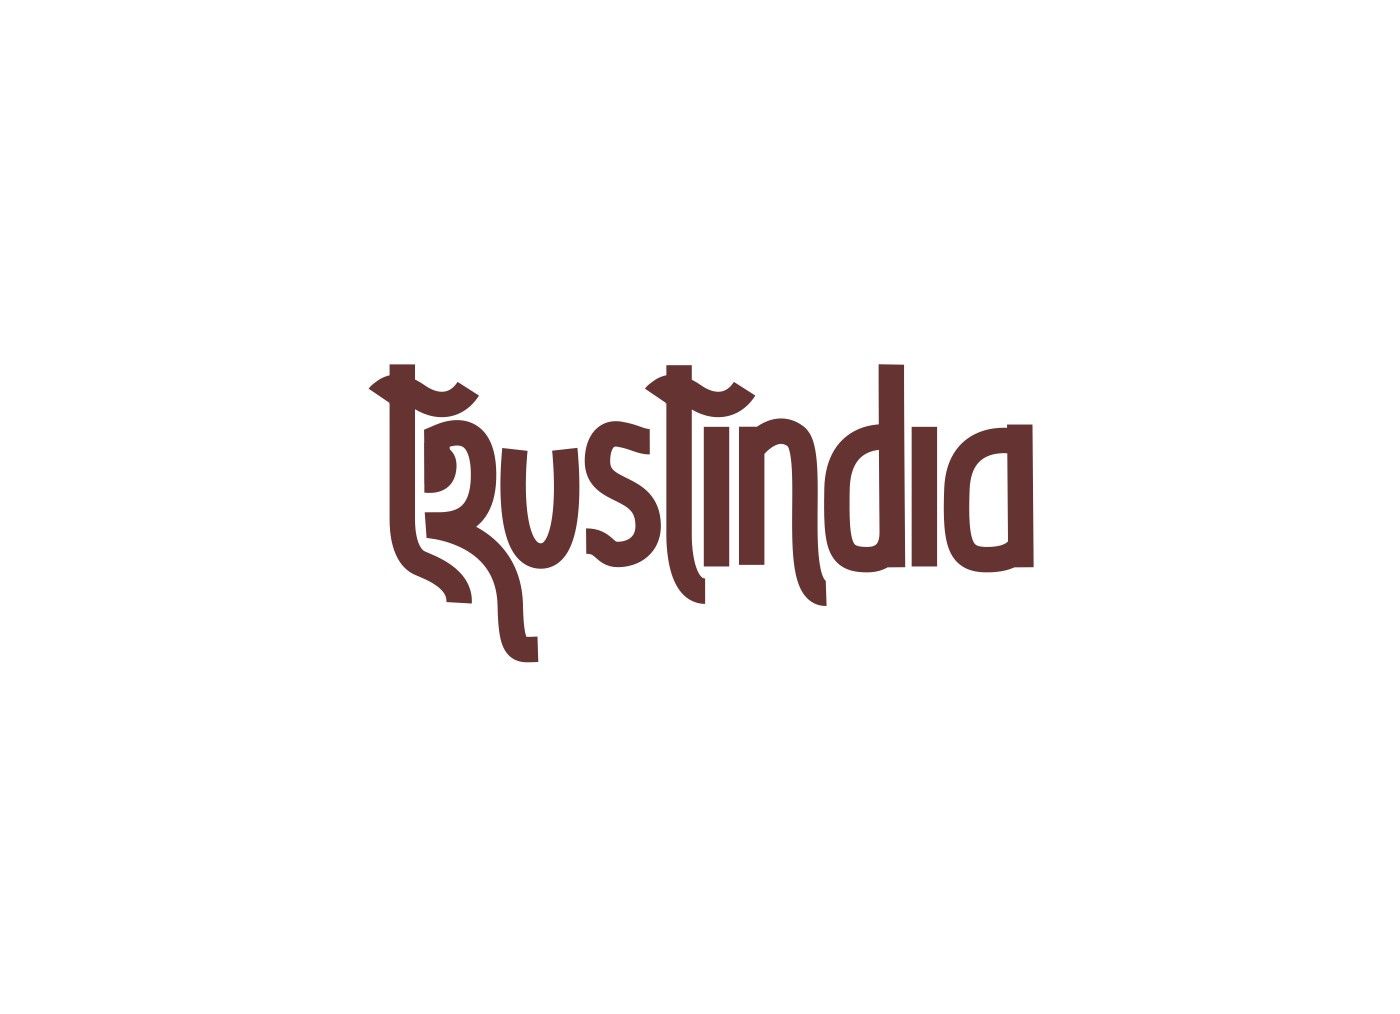 Логотип сайта об Индии, инд. товарах, здоровье - дизайнер Mewse